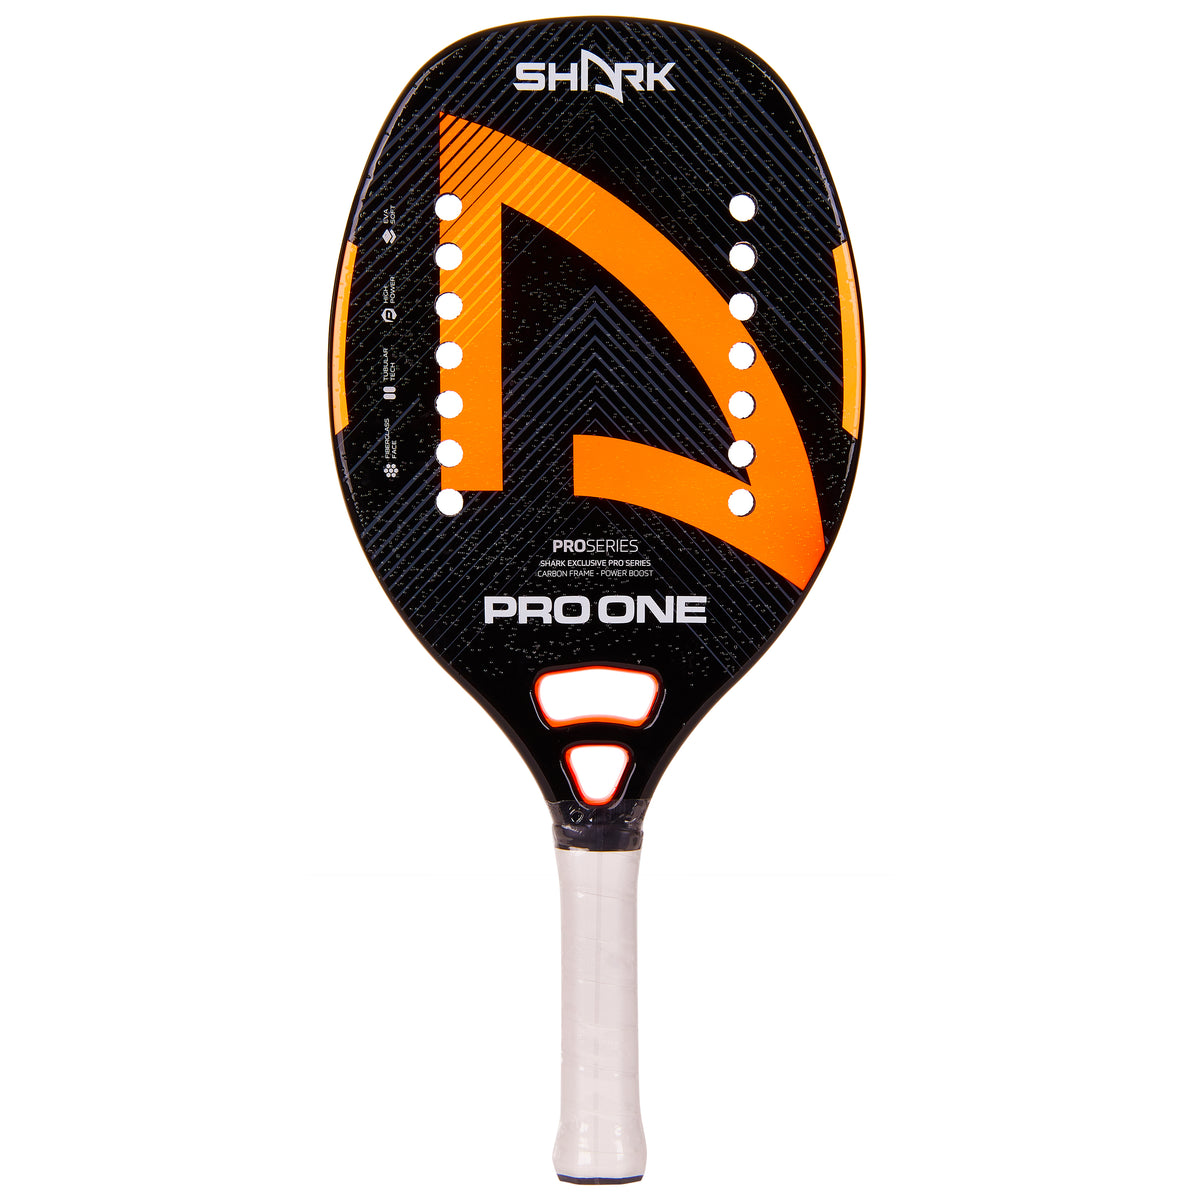 Shark Pro One Beach Tennis Racquet 2023